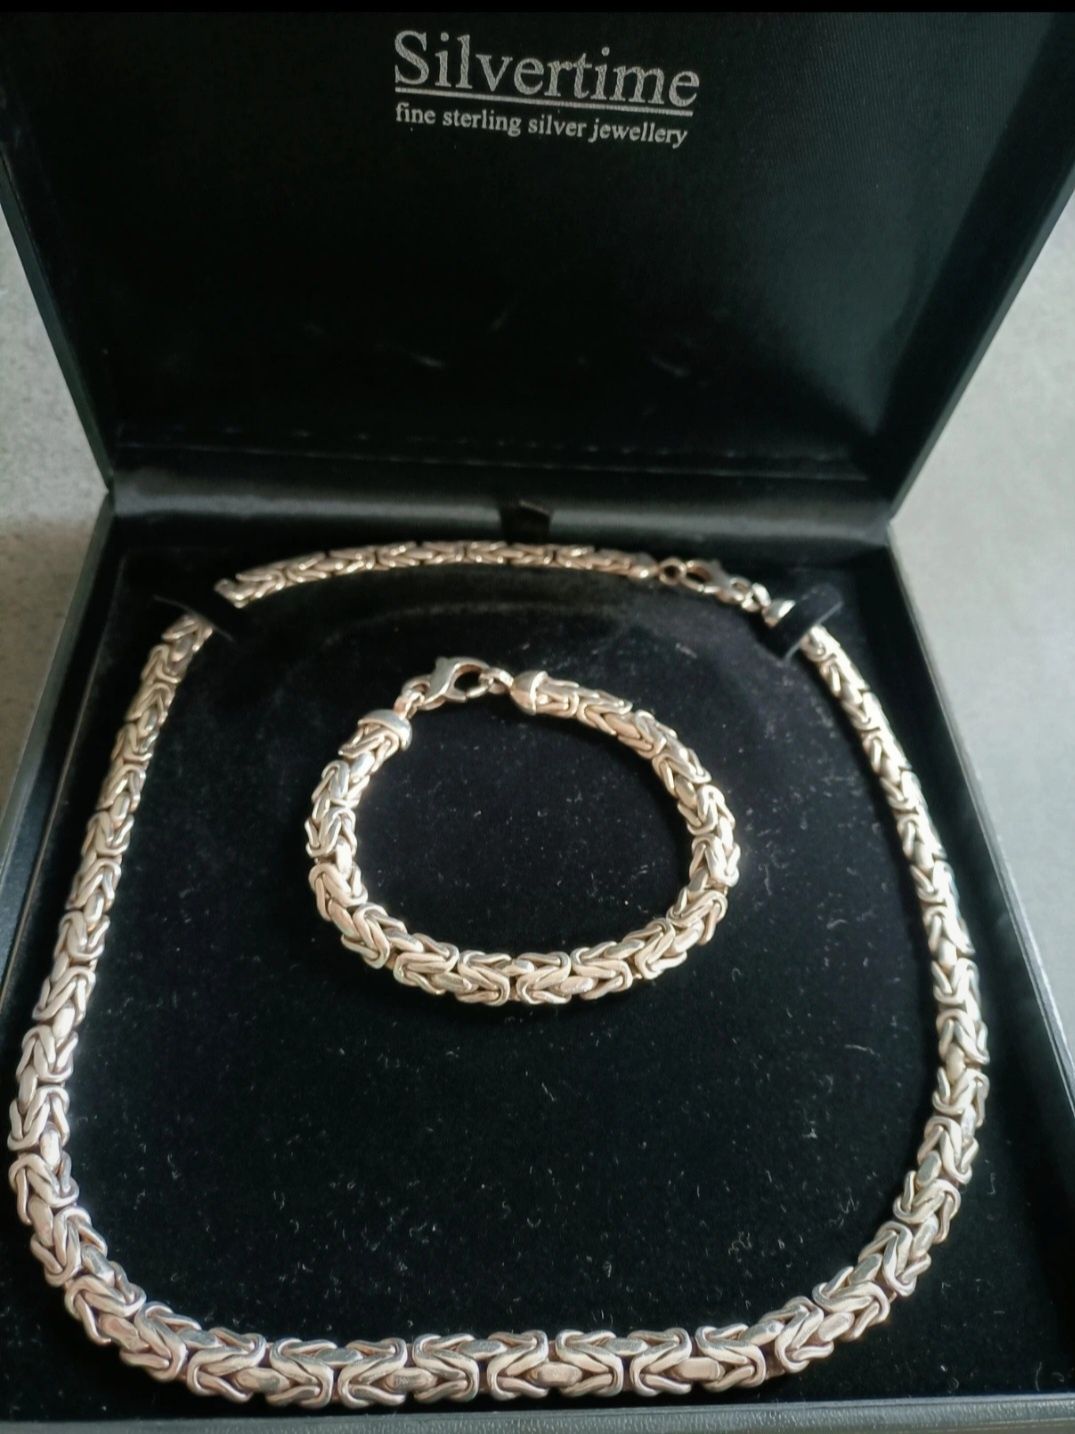 Zestaw srebrny męski Królewski bizantyjski łańcuch i bransoleta 153g